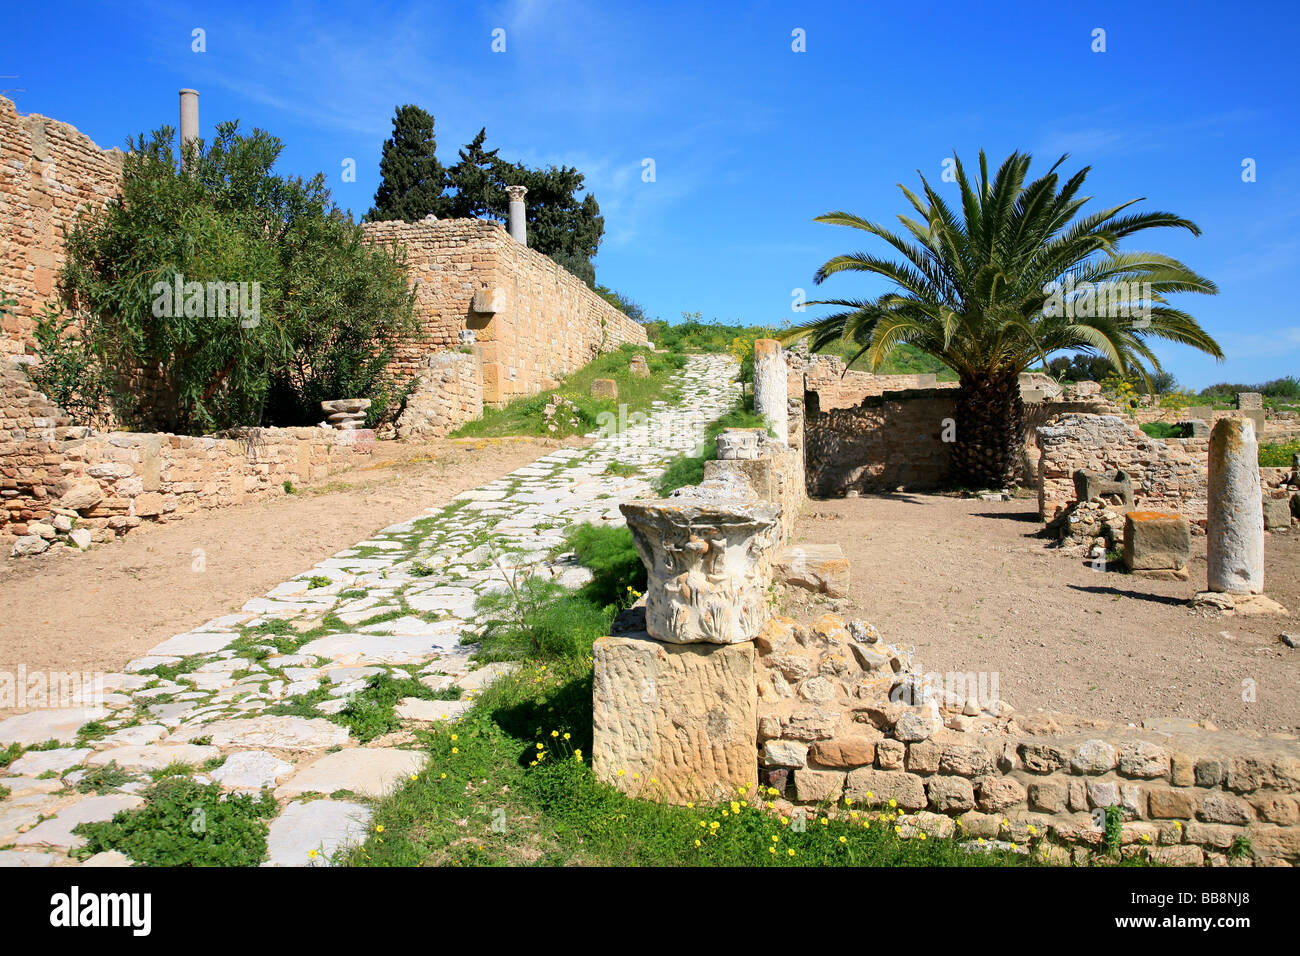 Ruinas de una antigua villa romana en Cartago, Túnez Foto de stock